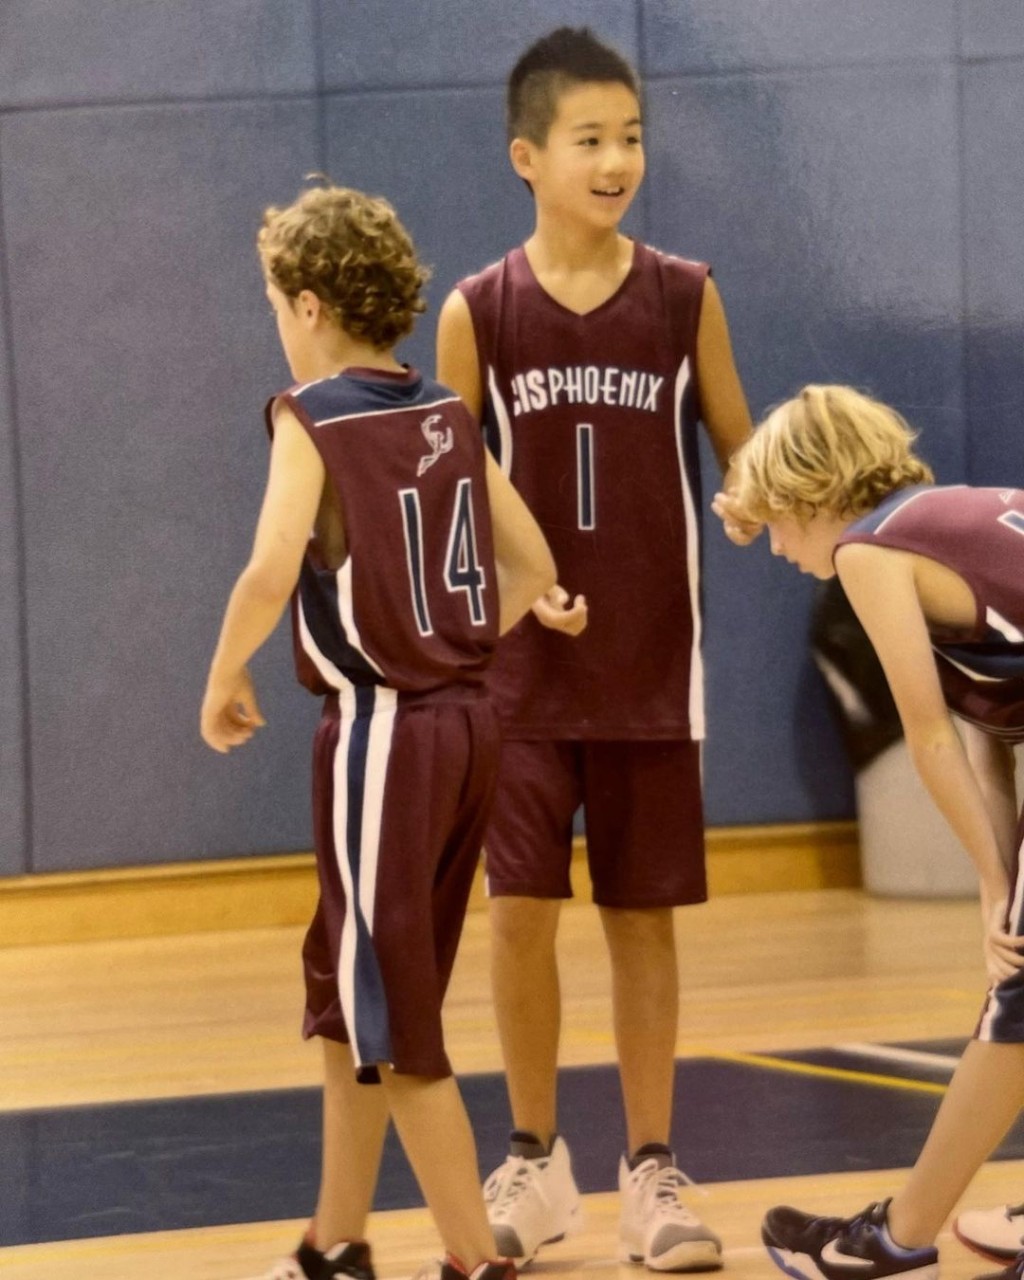 大仔Jeremey愛打籃球。